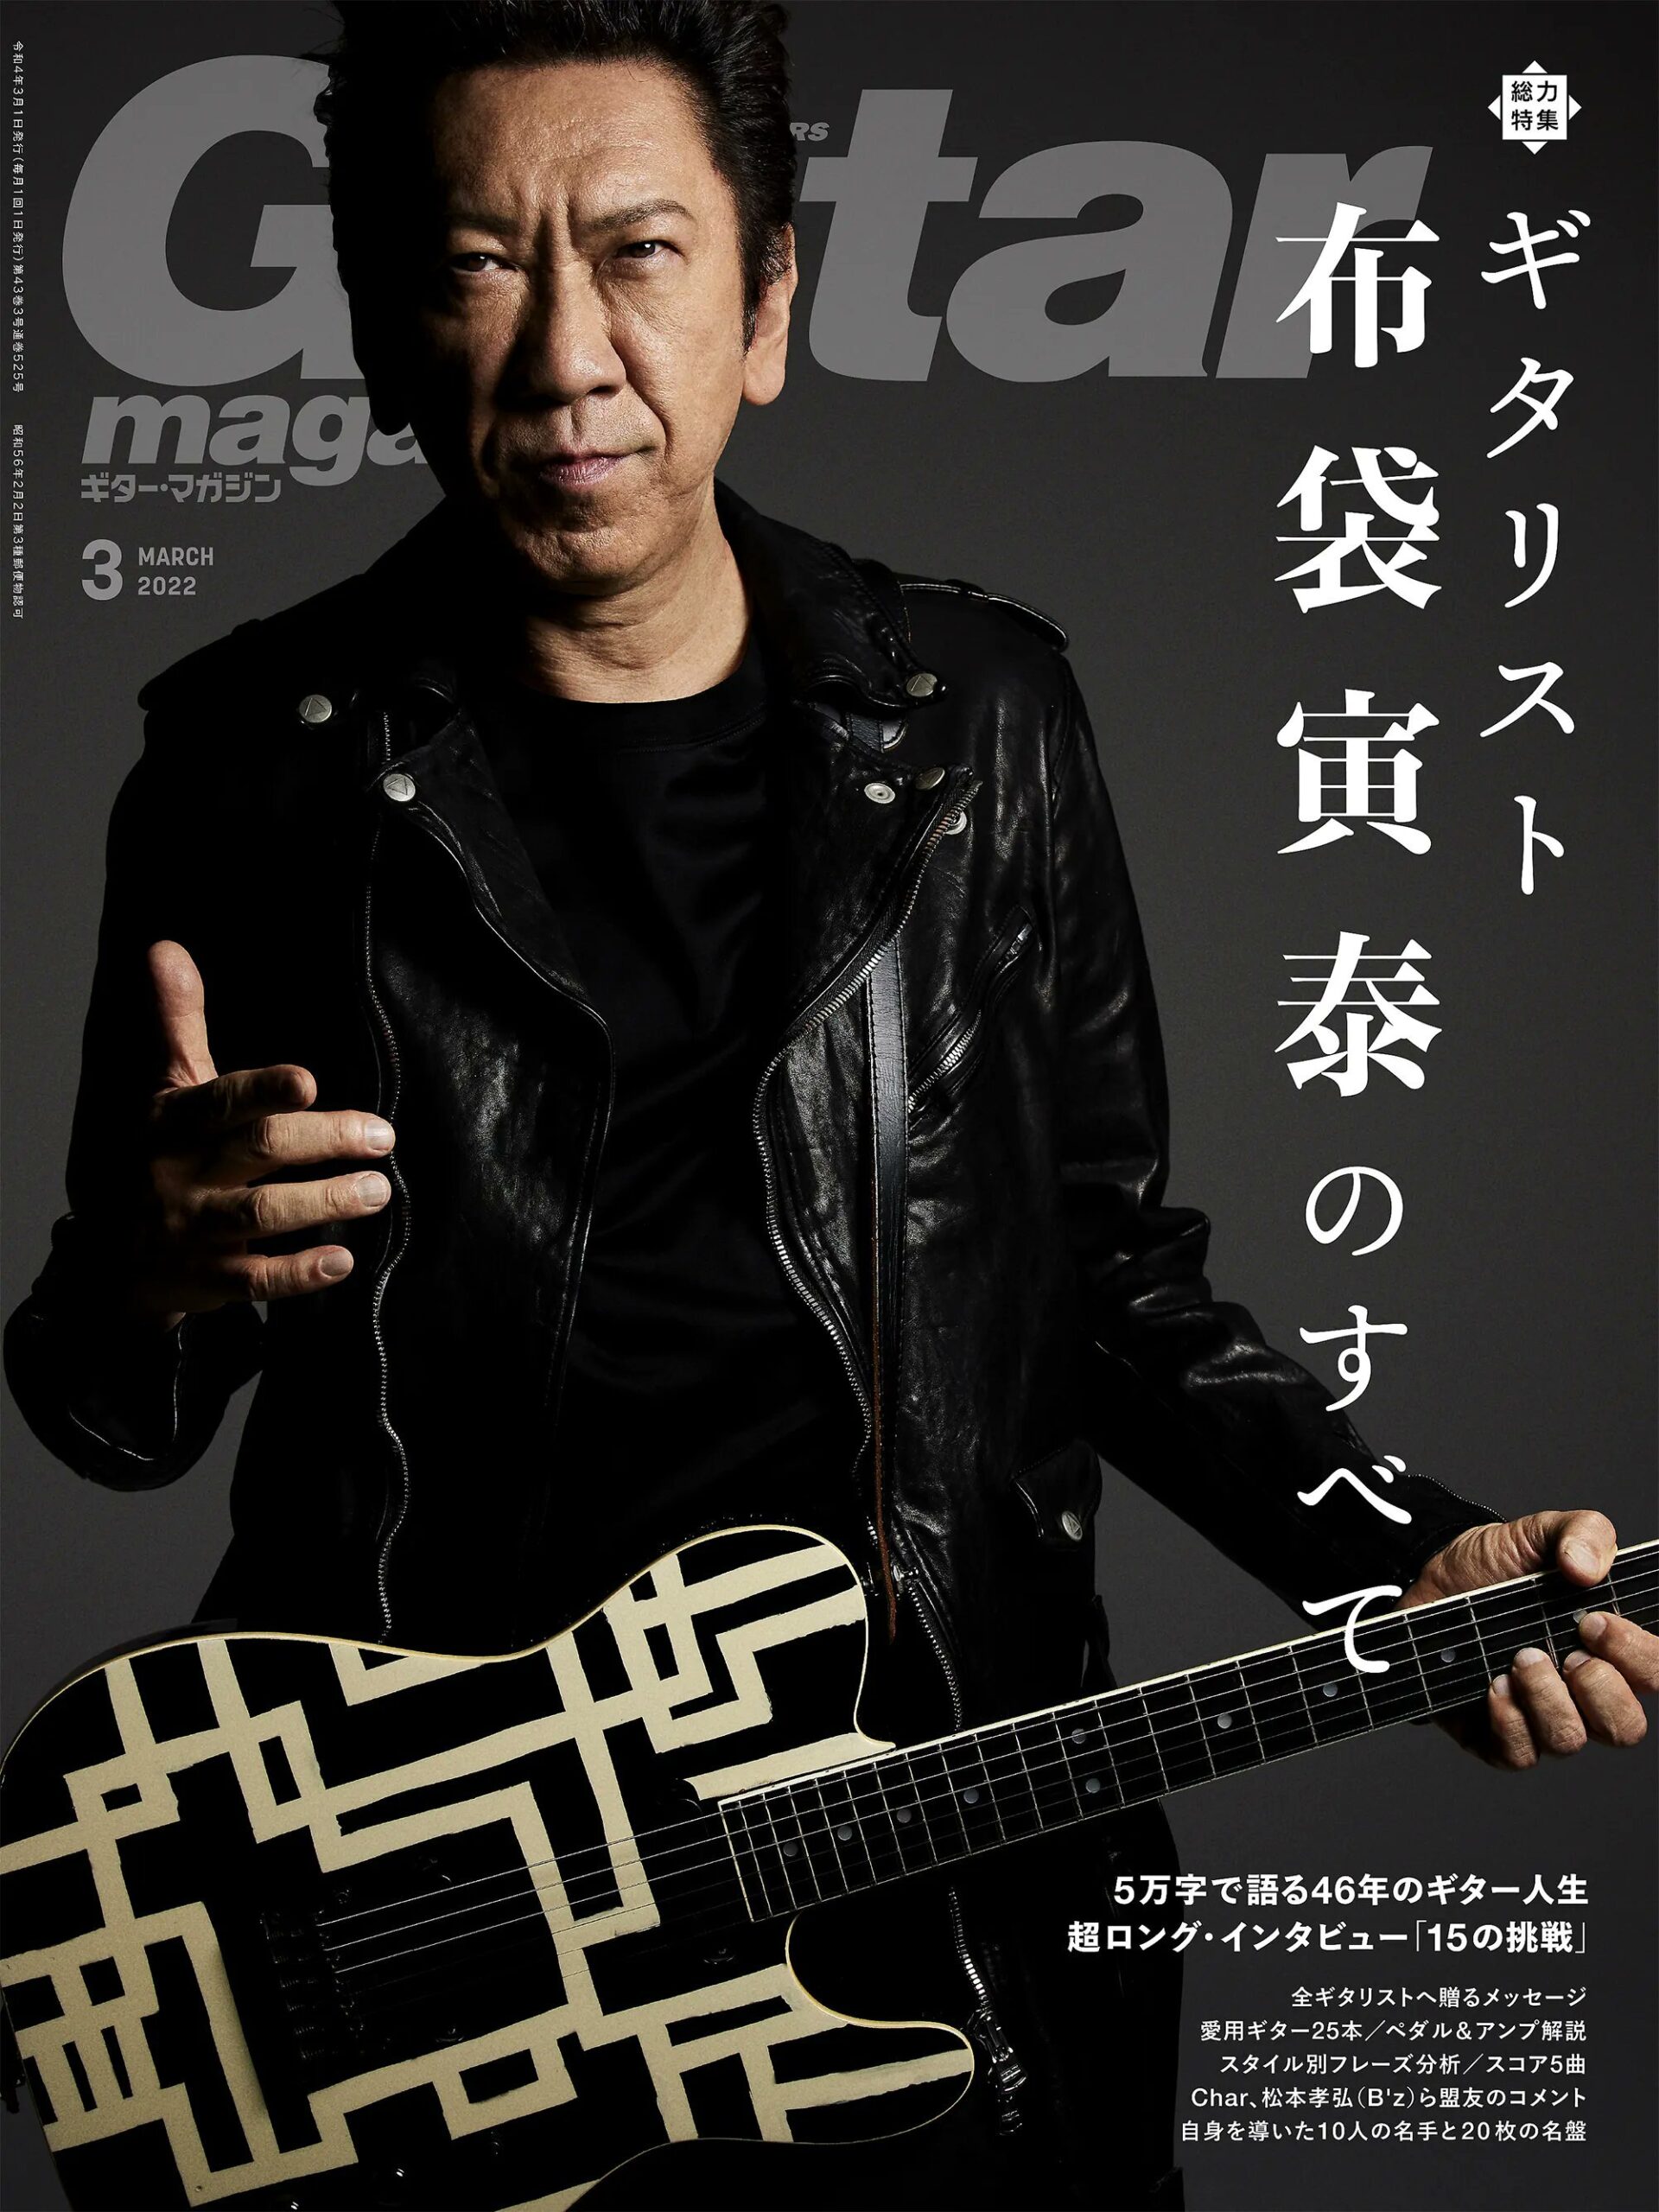 『ギター・マガジン』2022年3月号の布袋寅泰が写る表紙のイメージ写真